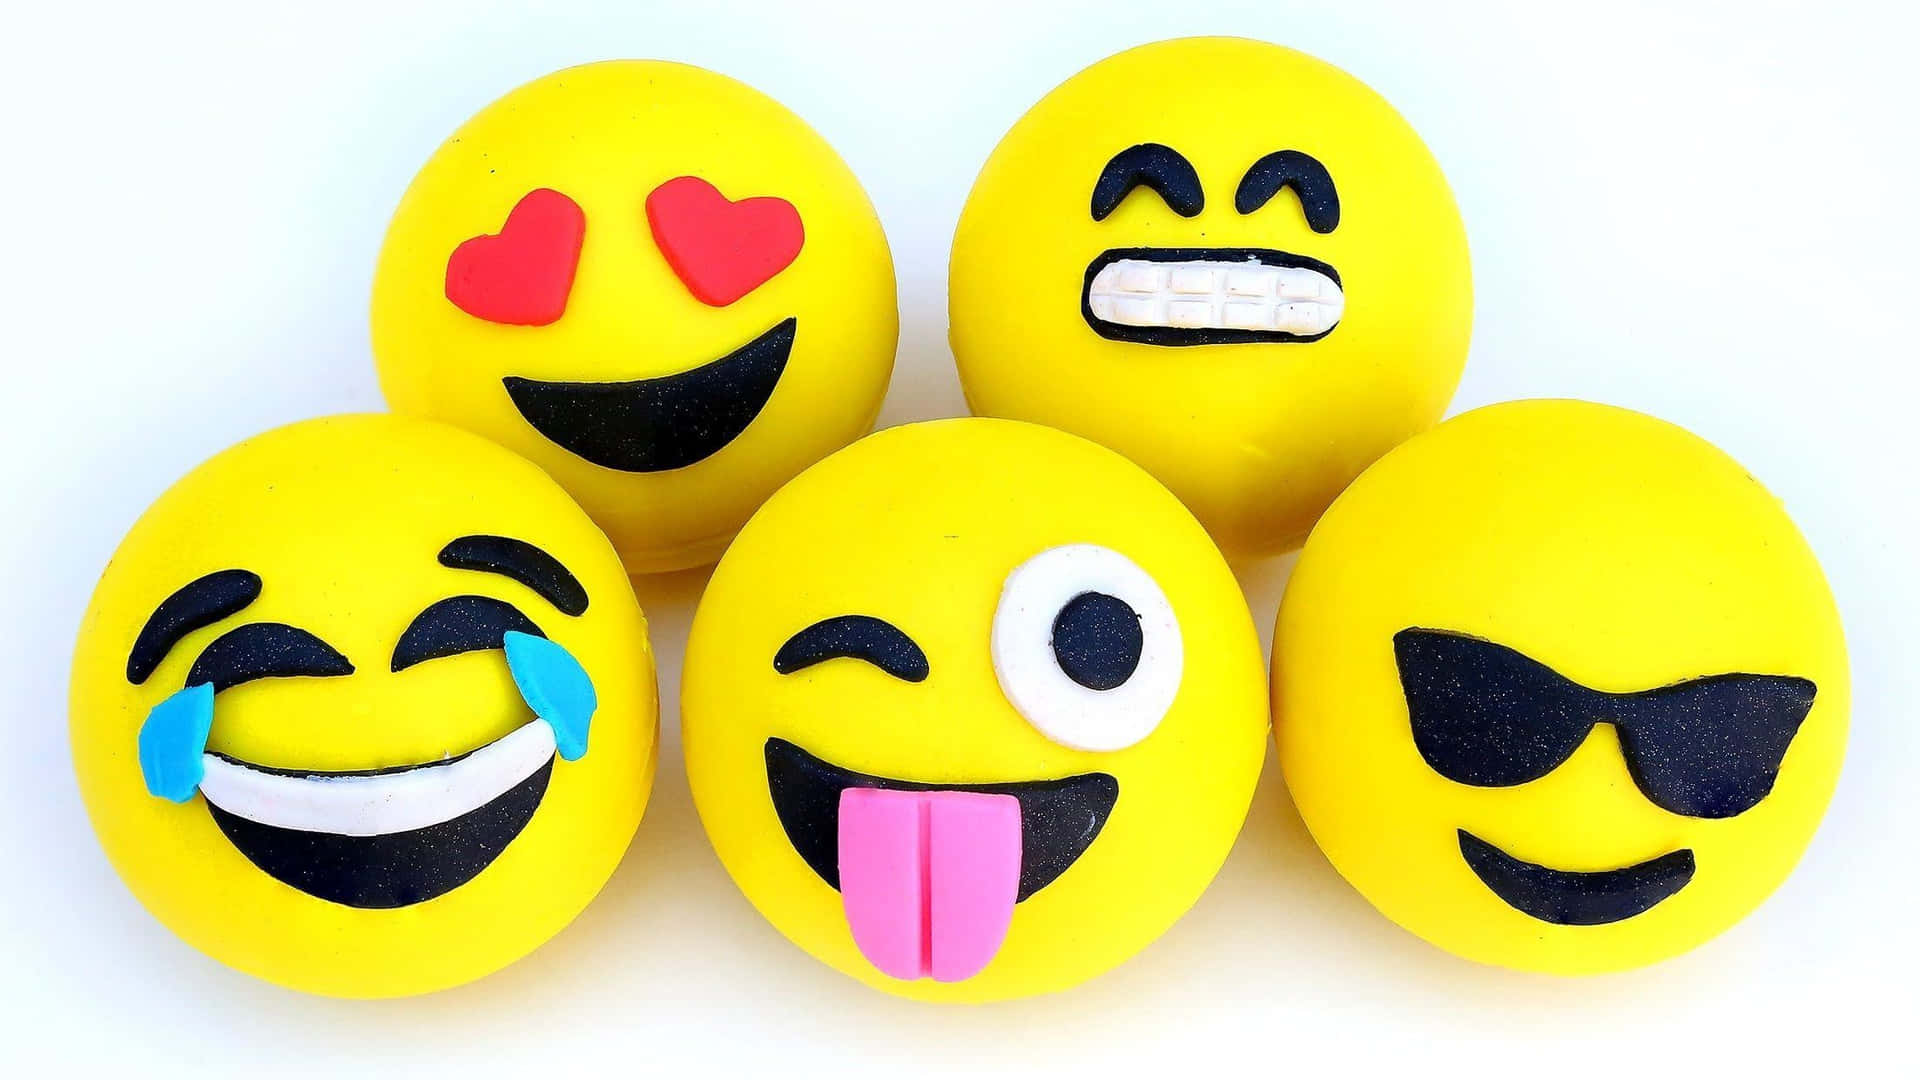 Free Emoji Wallpaper Downloads, [300+] Emoji Wallpapers for FREE |  